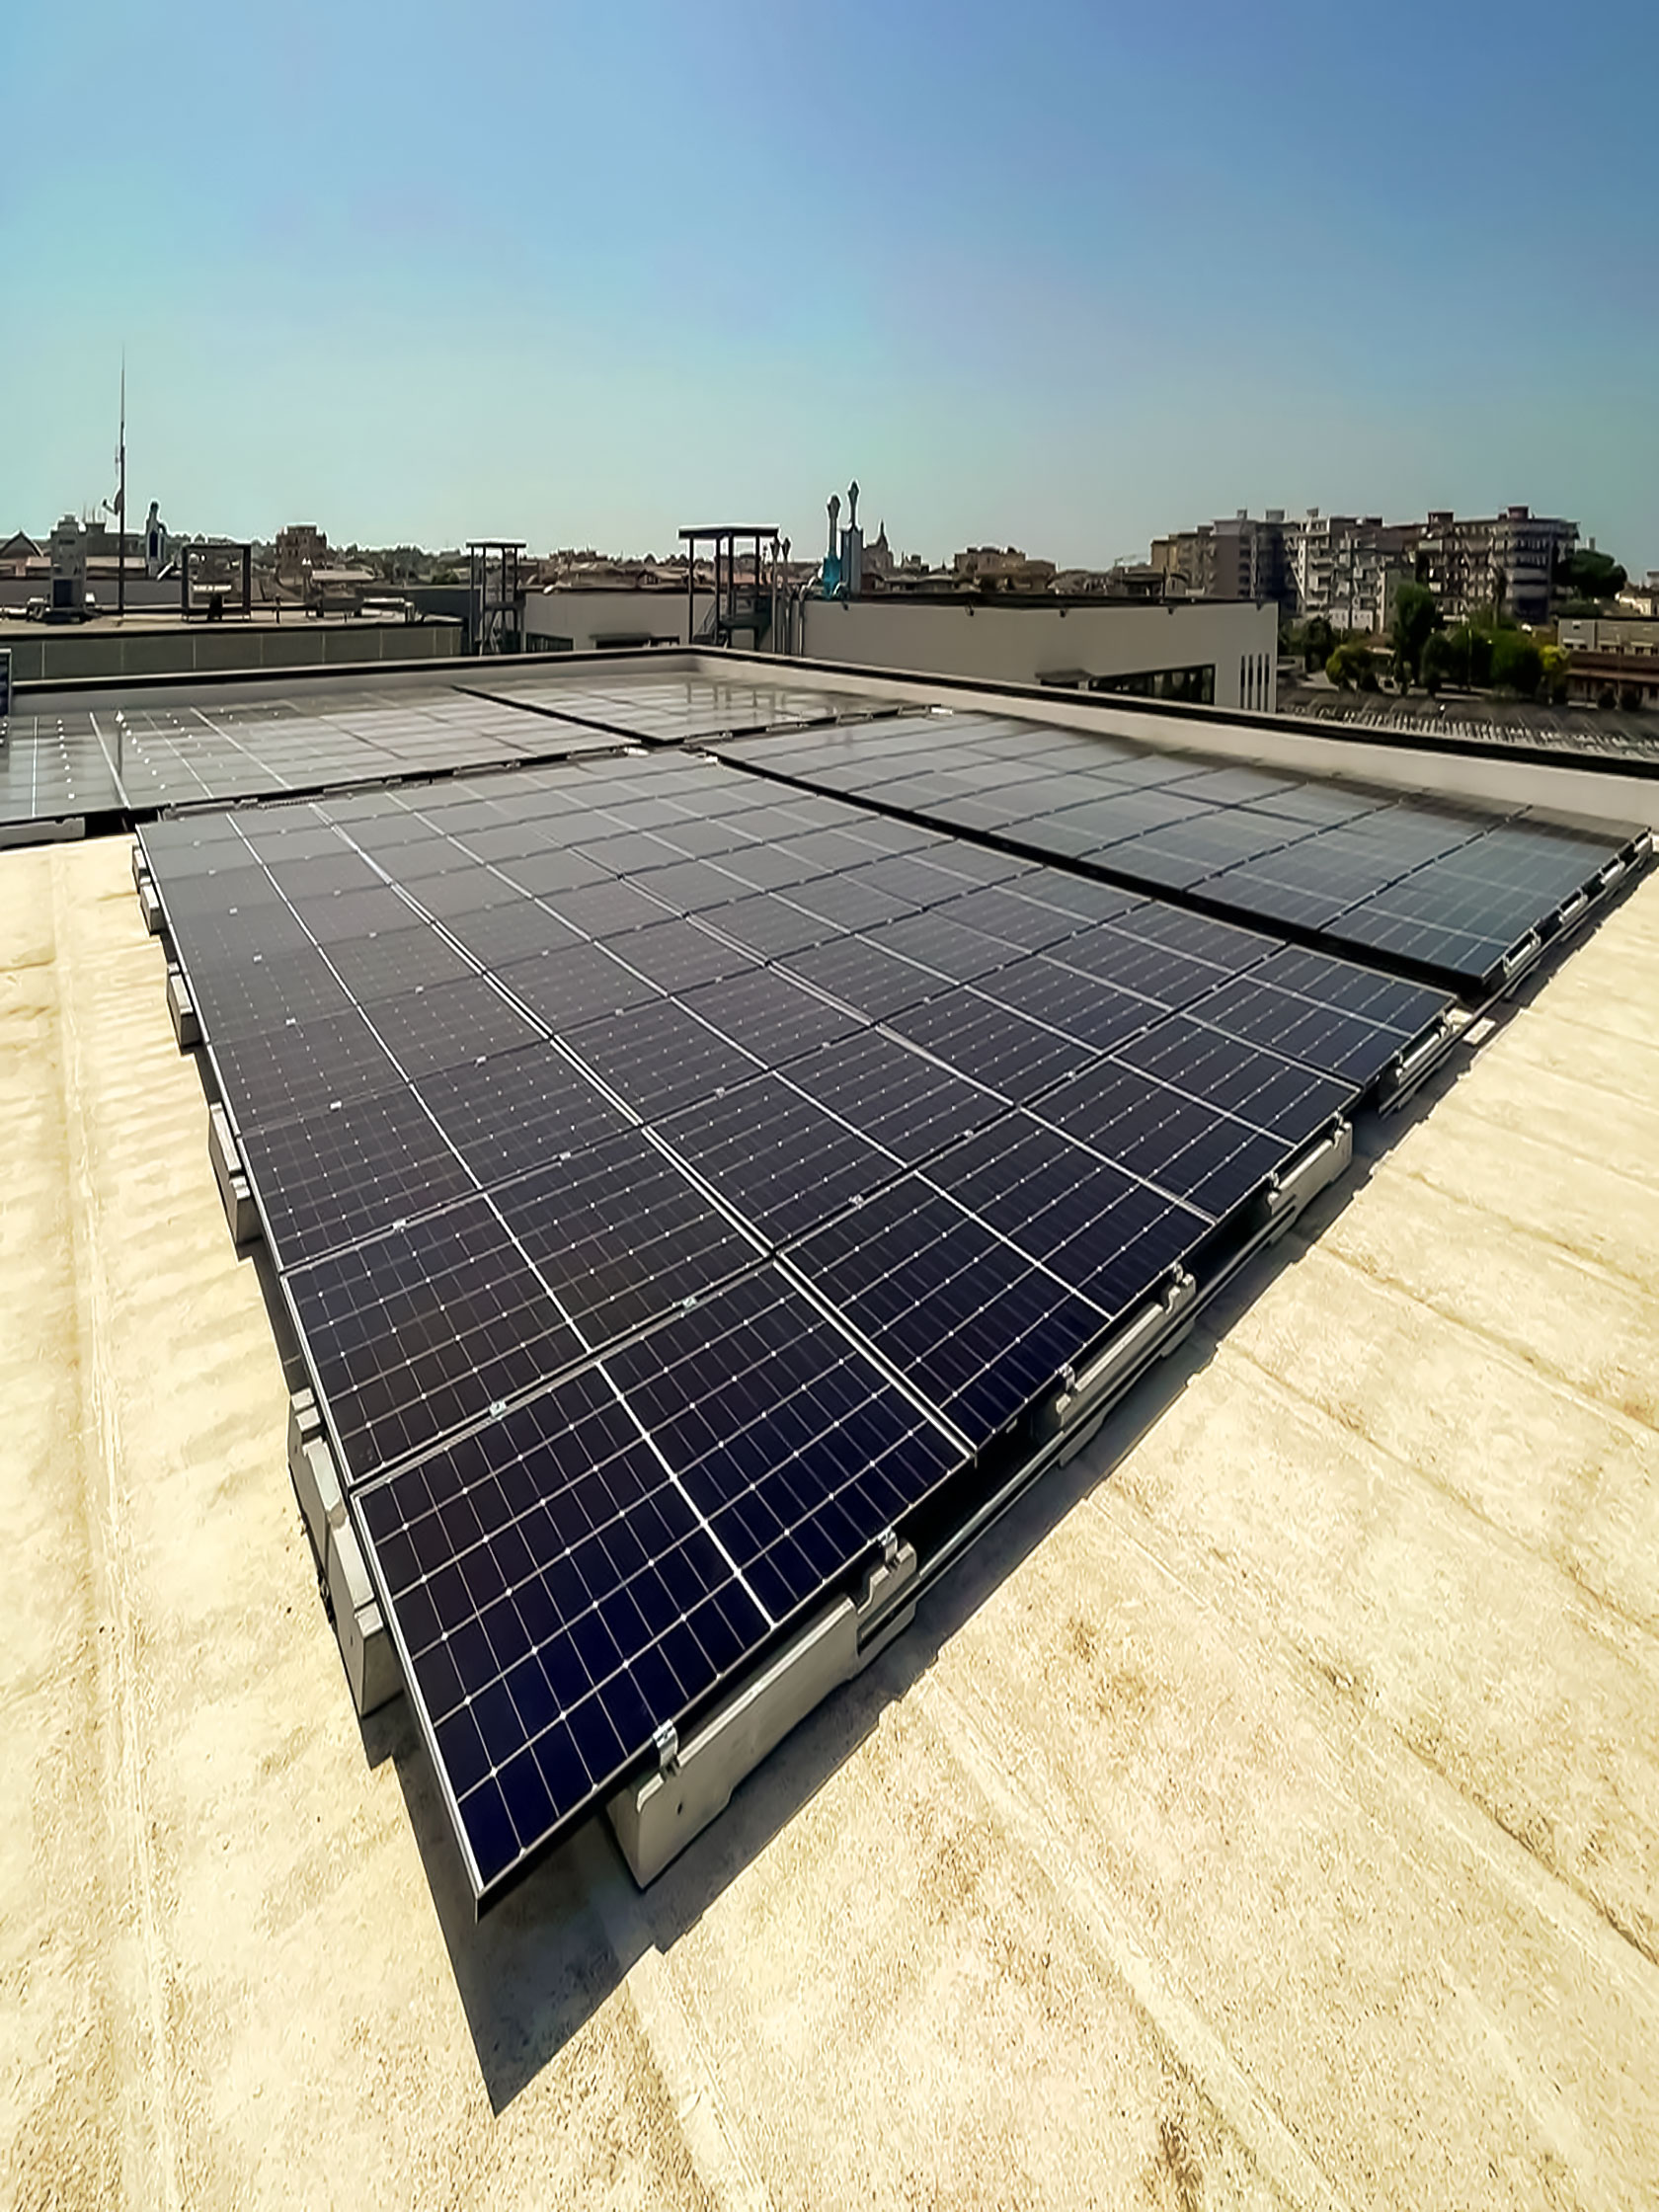 Impianto Fotovoltaico 65 kWp - Frattamaggiore, (Napoli) DMT Solar impianti fotovoltaici in tutta Italia residenziale e aziendale business, installatore certificato Tesla Powerwall e Sunpower Maxeon